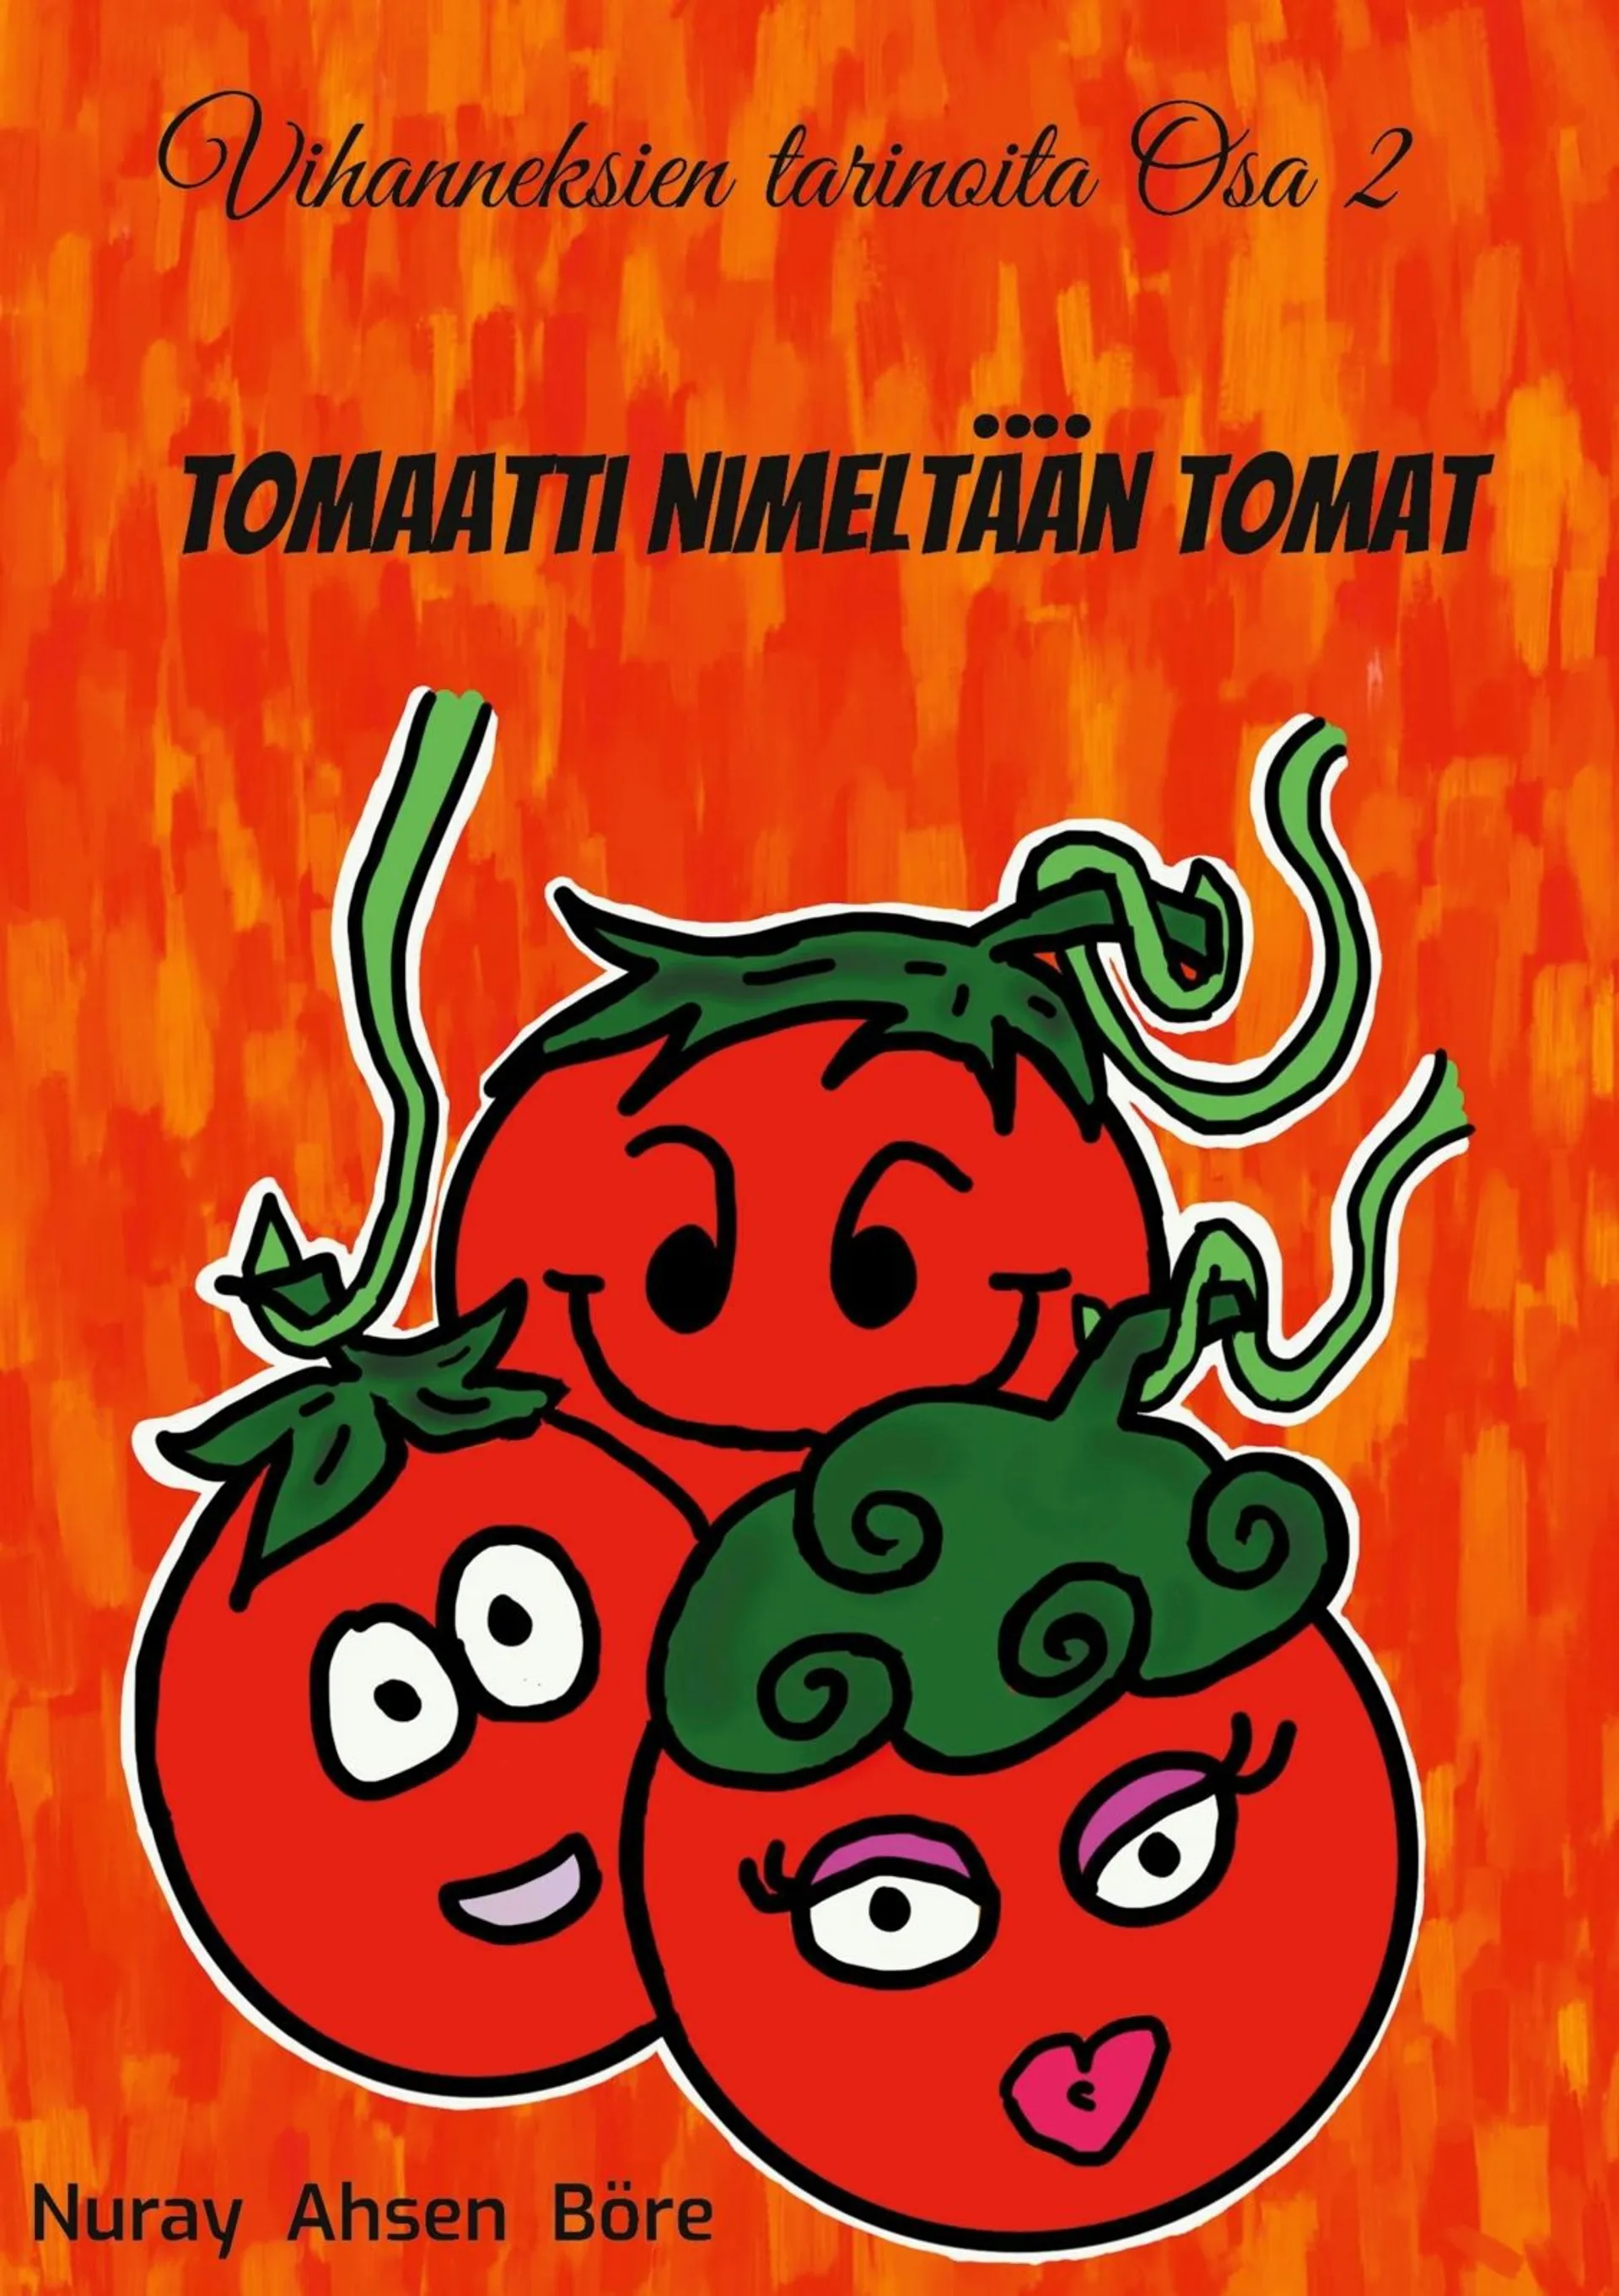 Ahsen Böre, Tomaatti nimeltään Tomat - Vihanneksien tarinoita osa 2